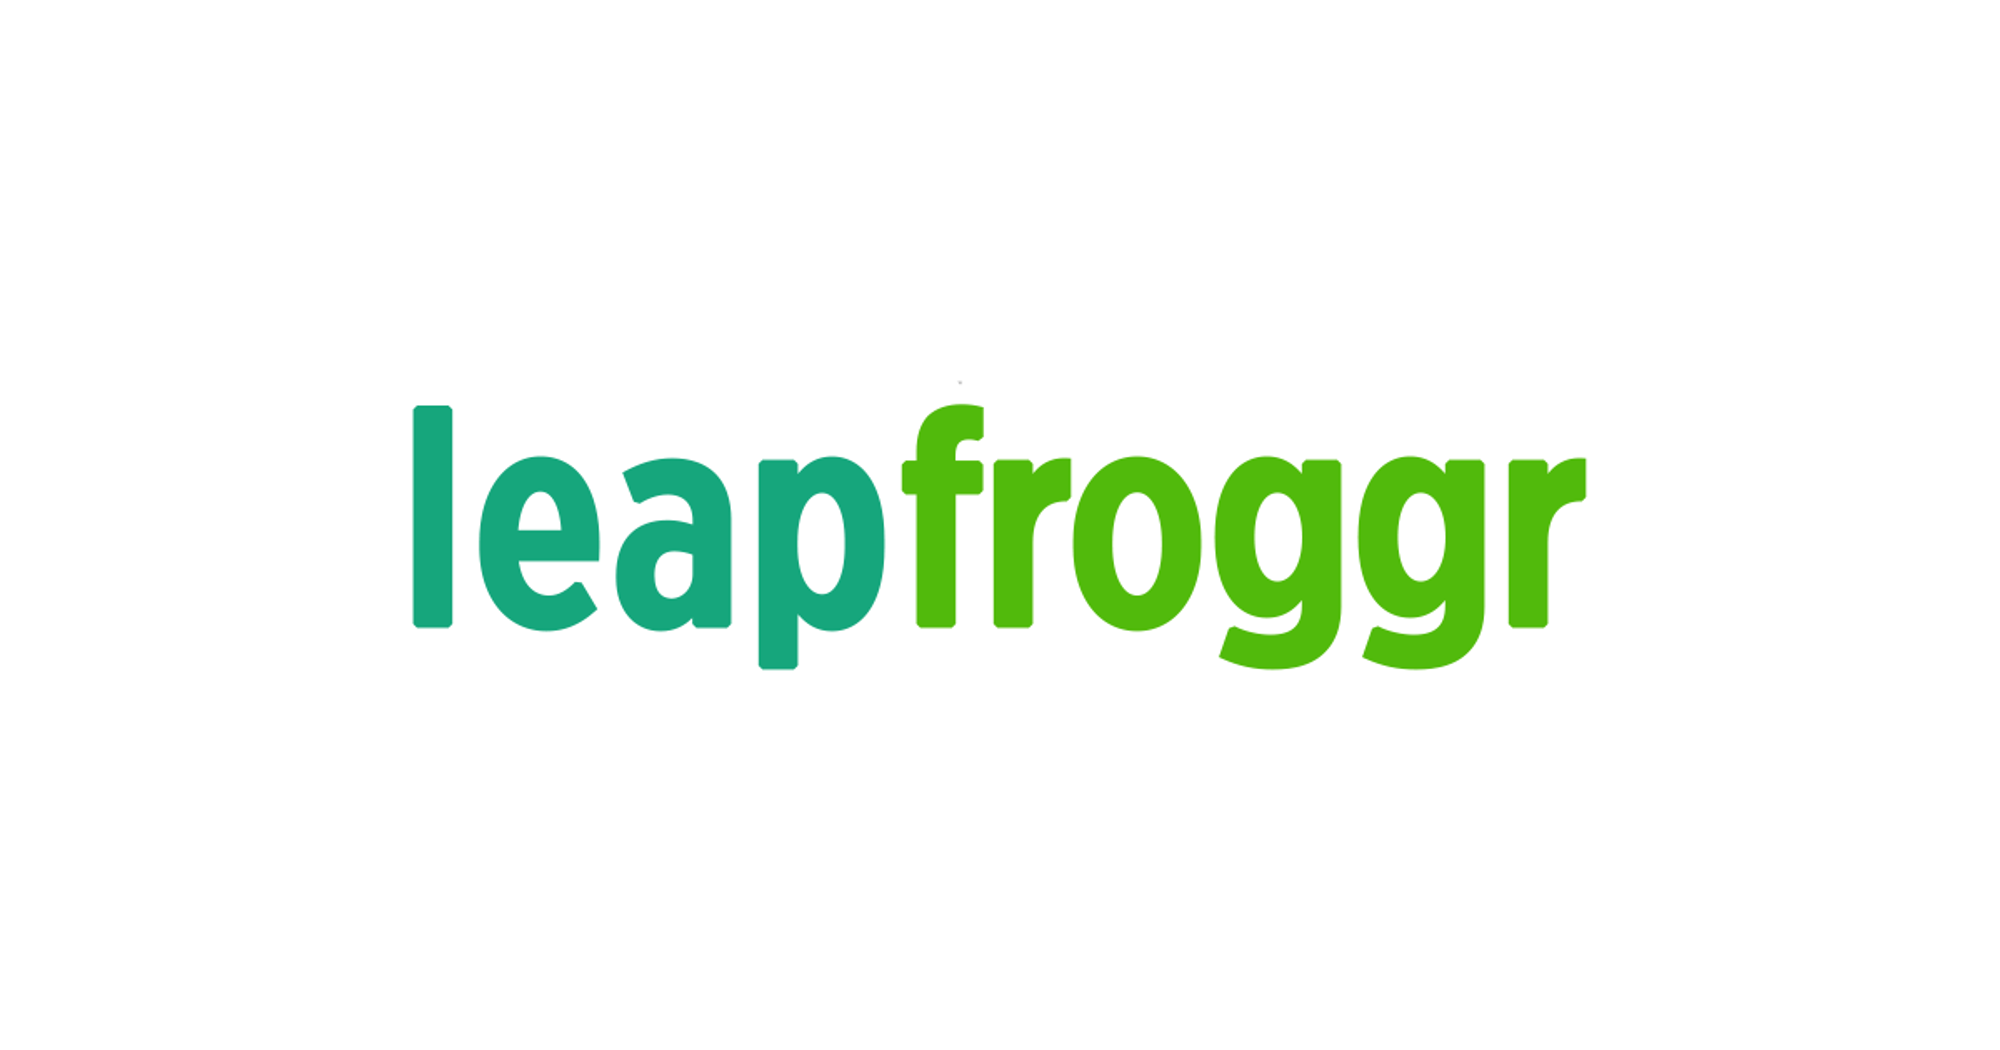 iOS Developer at LeapFroggr Inc.